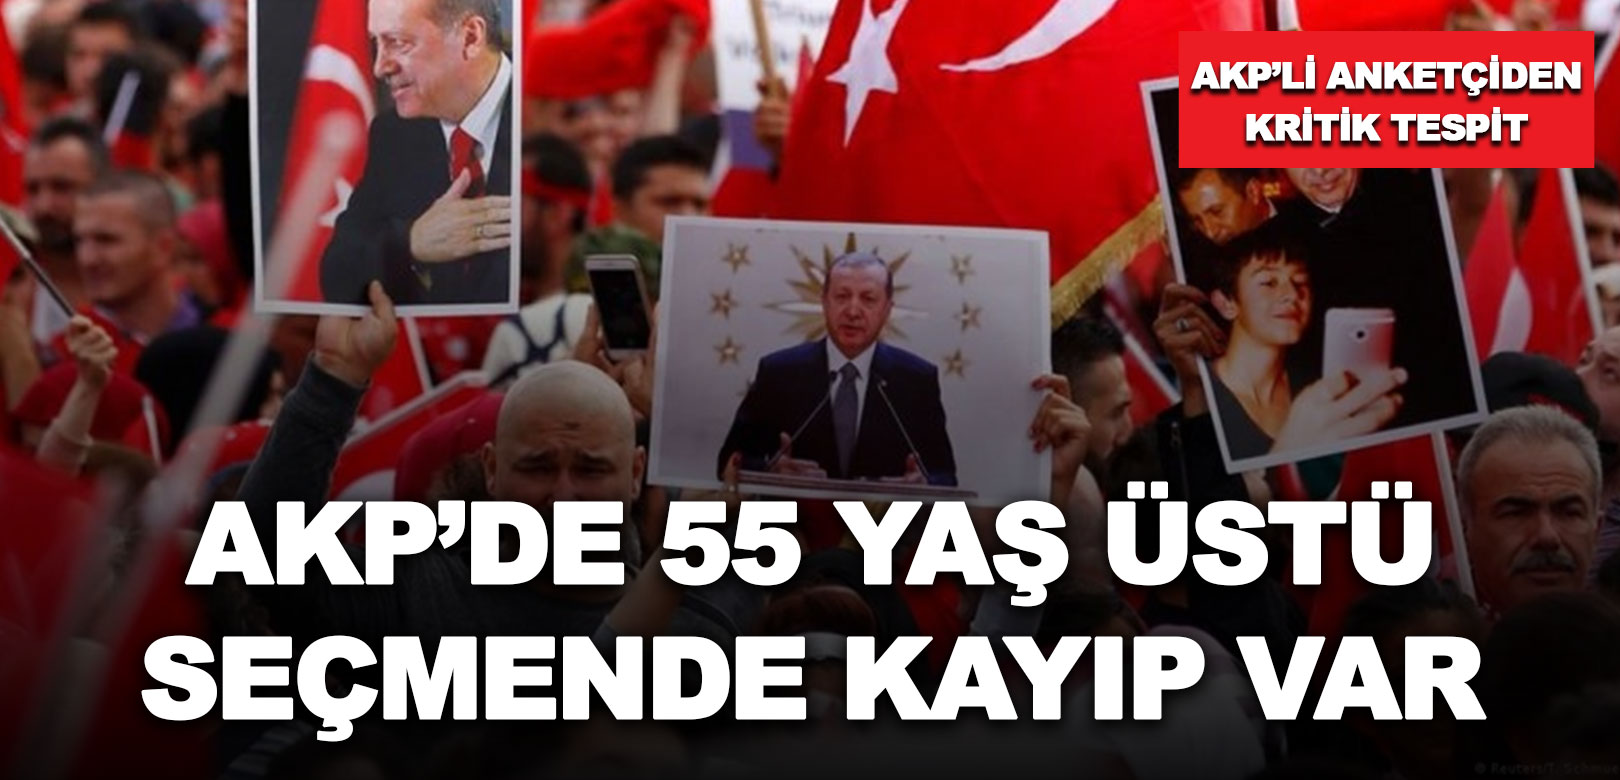 Seçimlere 1 hafta kala AKP’nin anketçisi Aktaş’tan kritik tespit: AKP 55 yaş üstü seçmende desteği en az 10 puan geri gitti